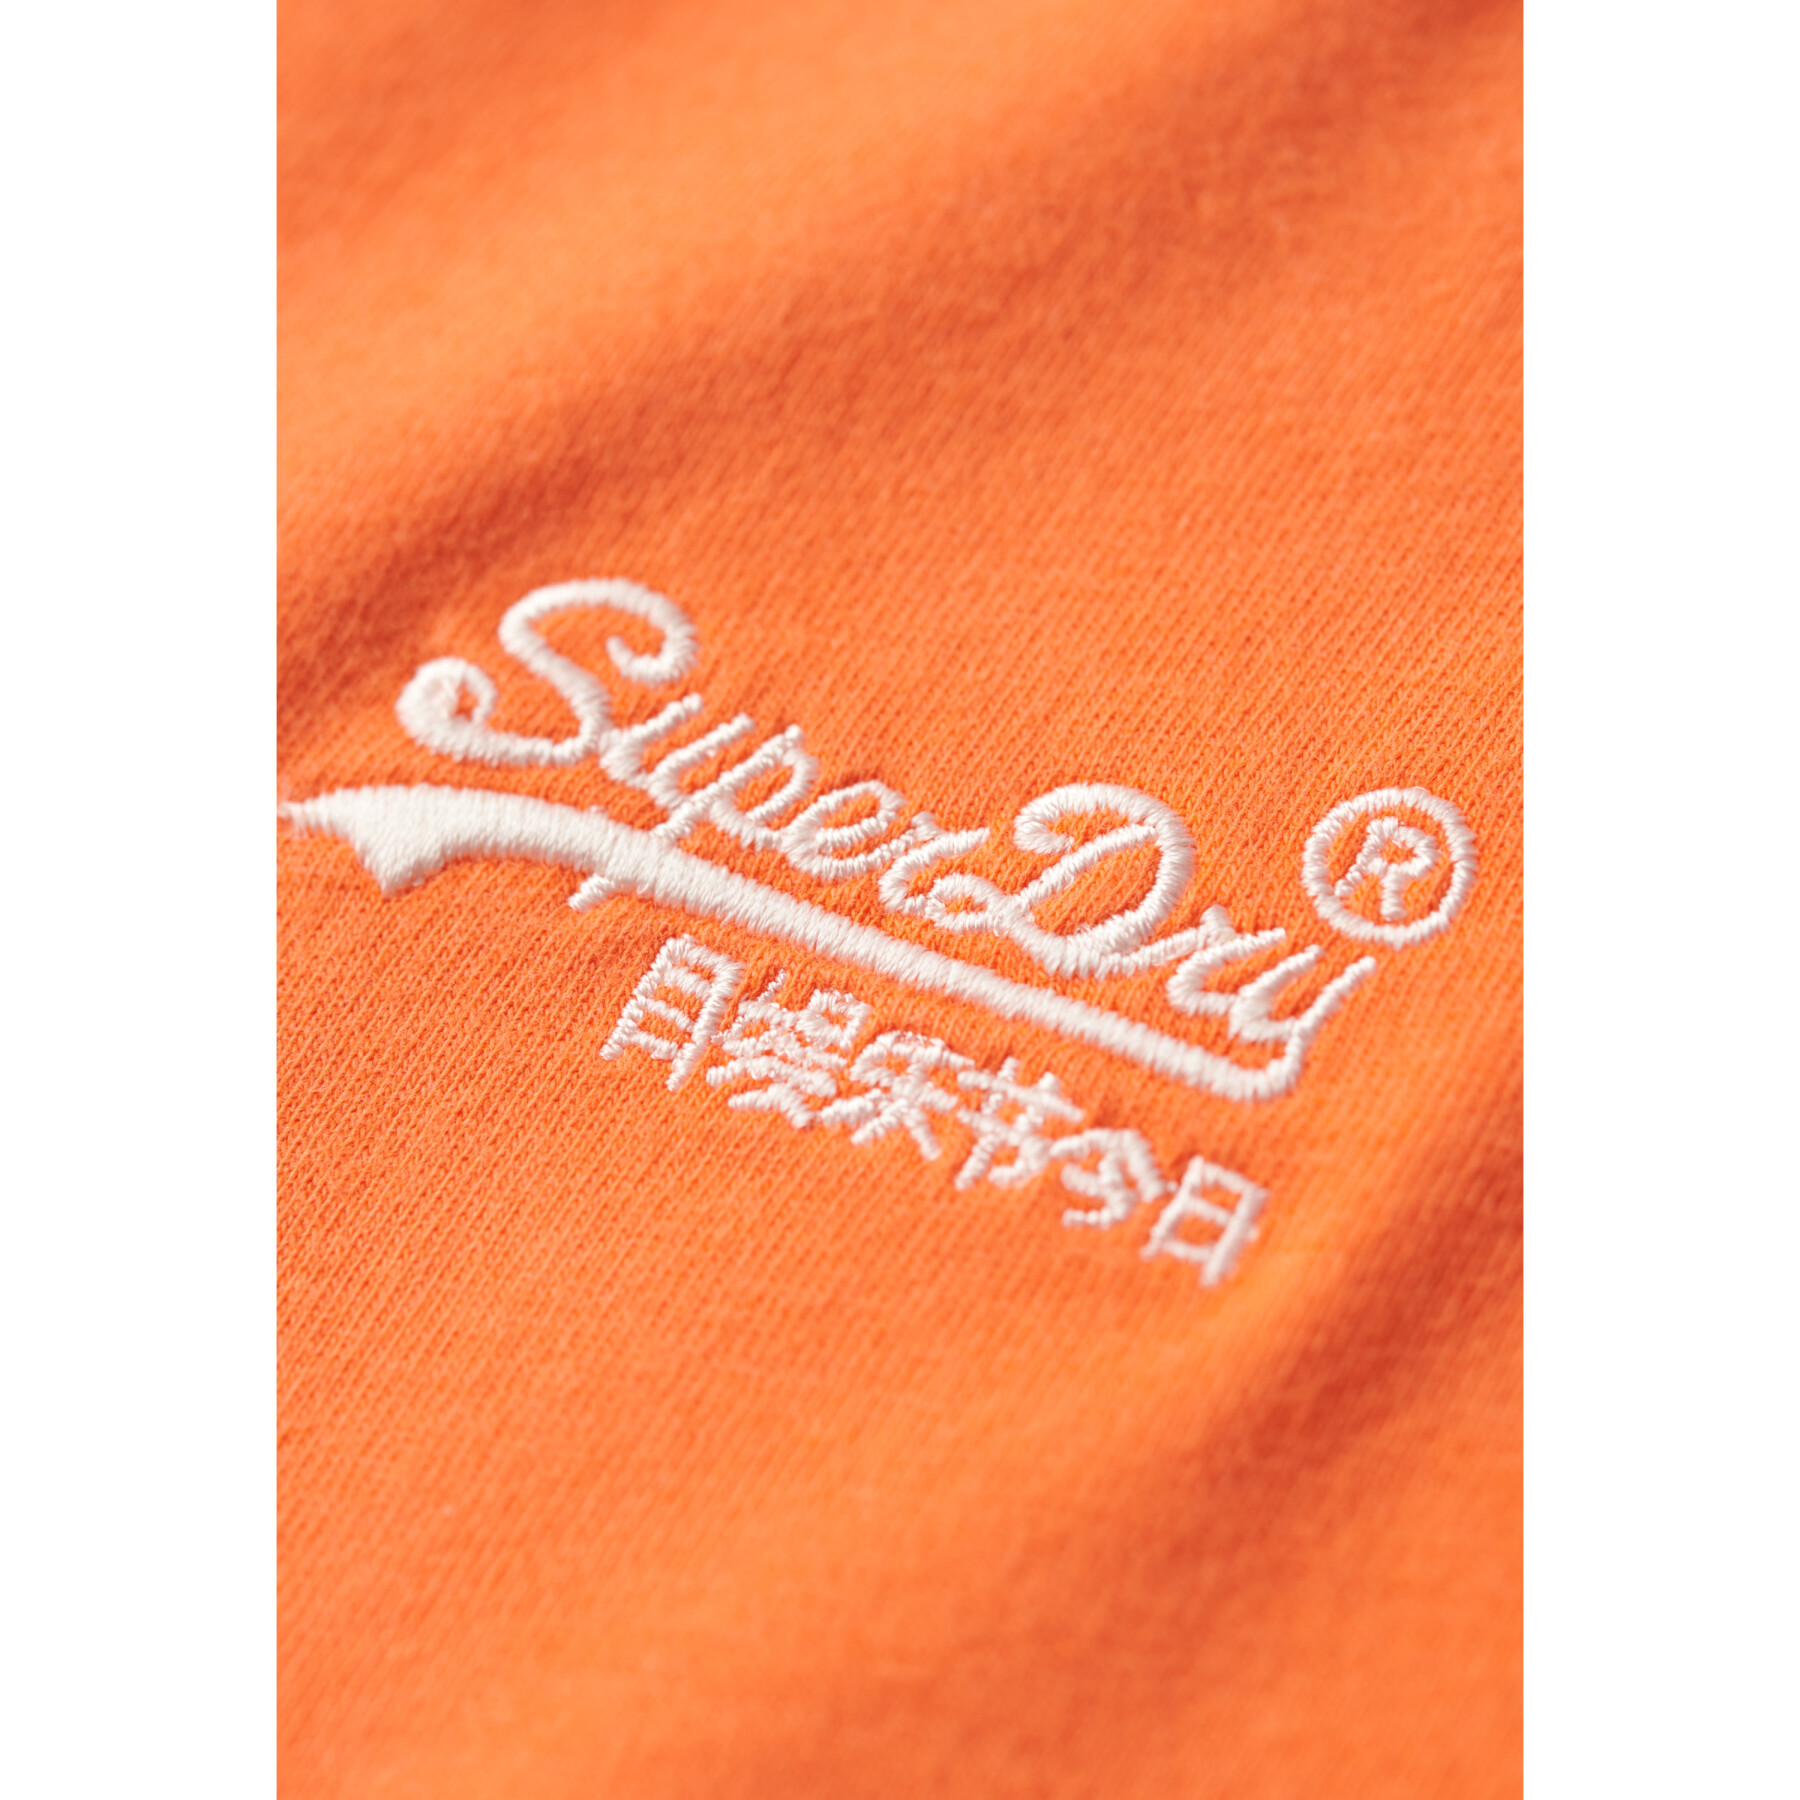 Camiseta de algodón orgánico con cuello de pico y logotipo Superdry Essential